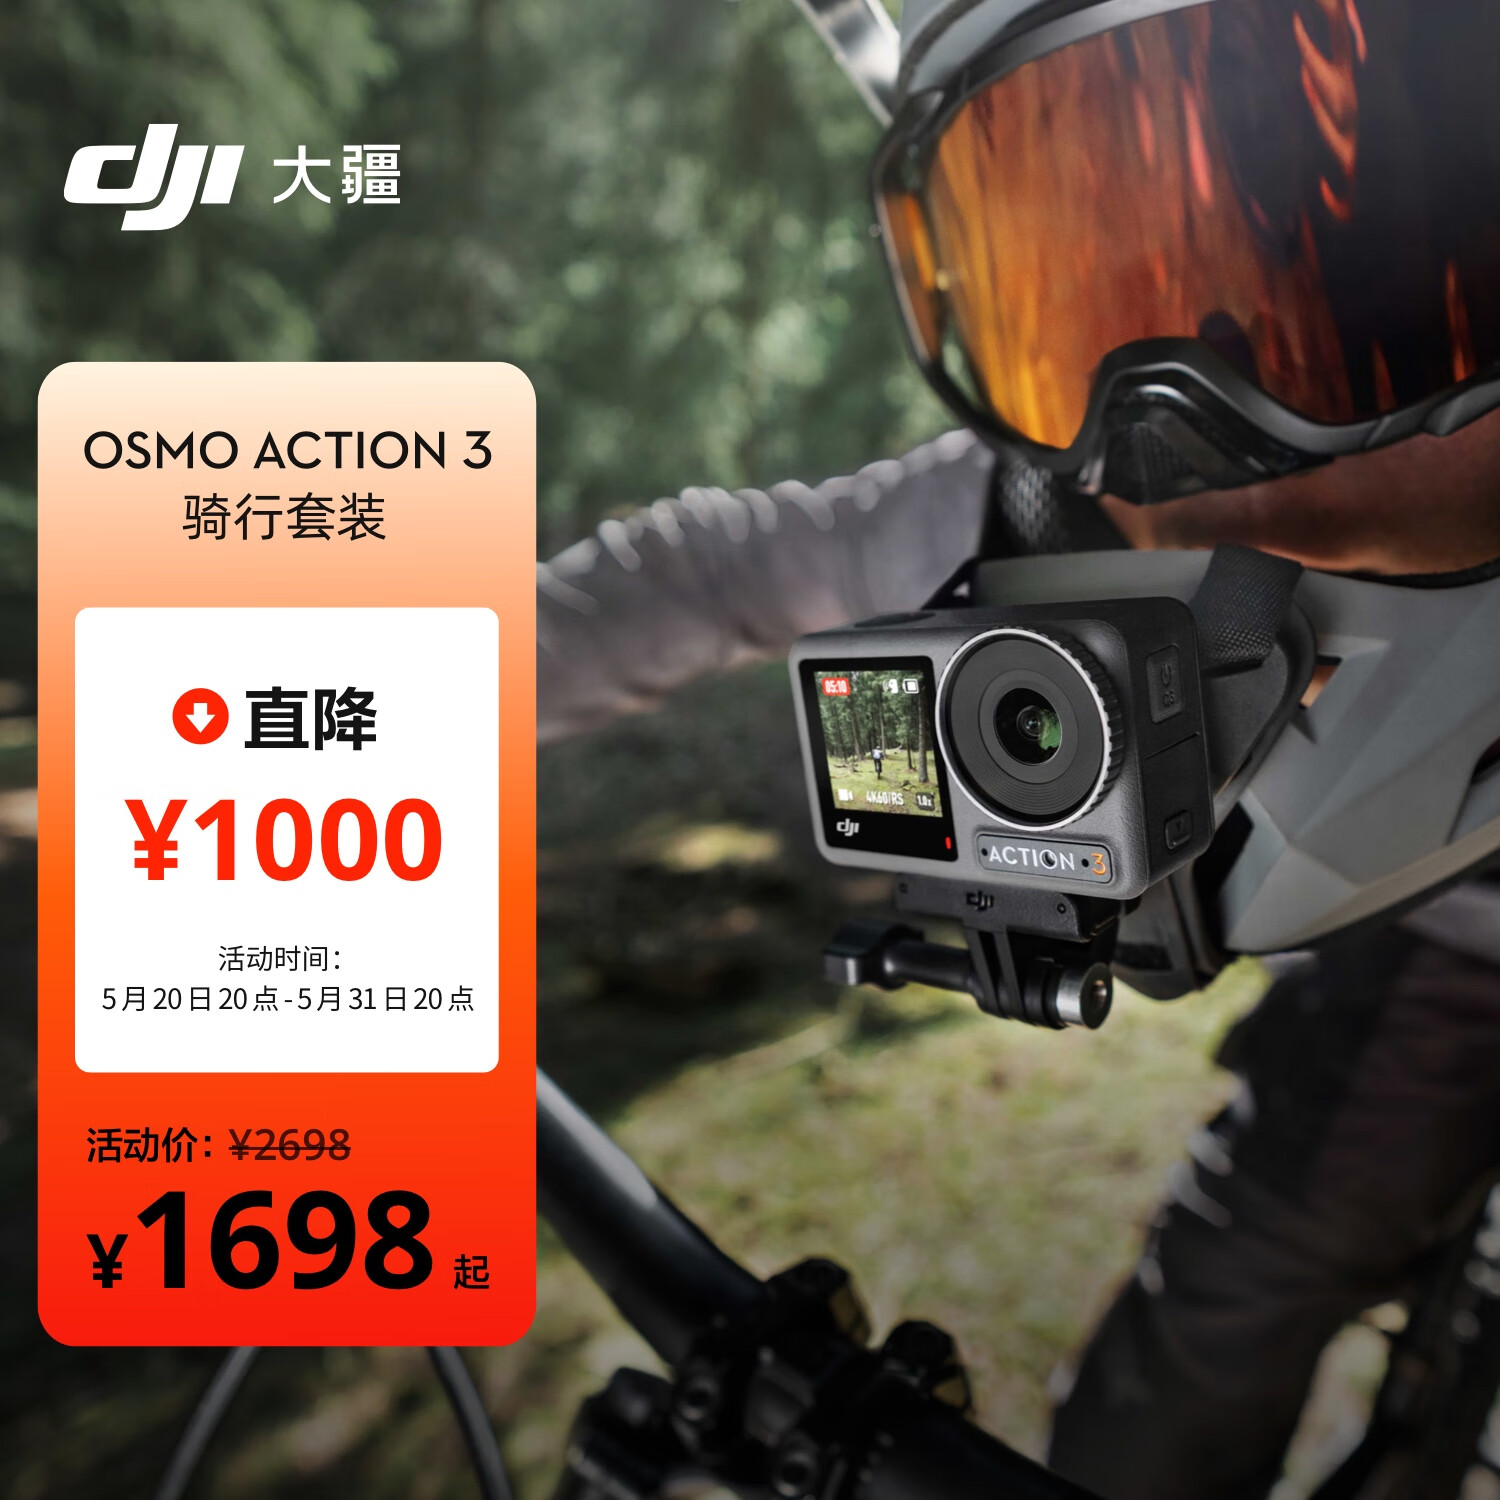 大疆 DJI Osmo Action 3 骑行套装 运动相机 4K增稳户外vlog相机骑行头戴摄像机行车记录仪+128G内存卡